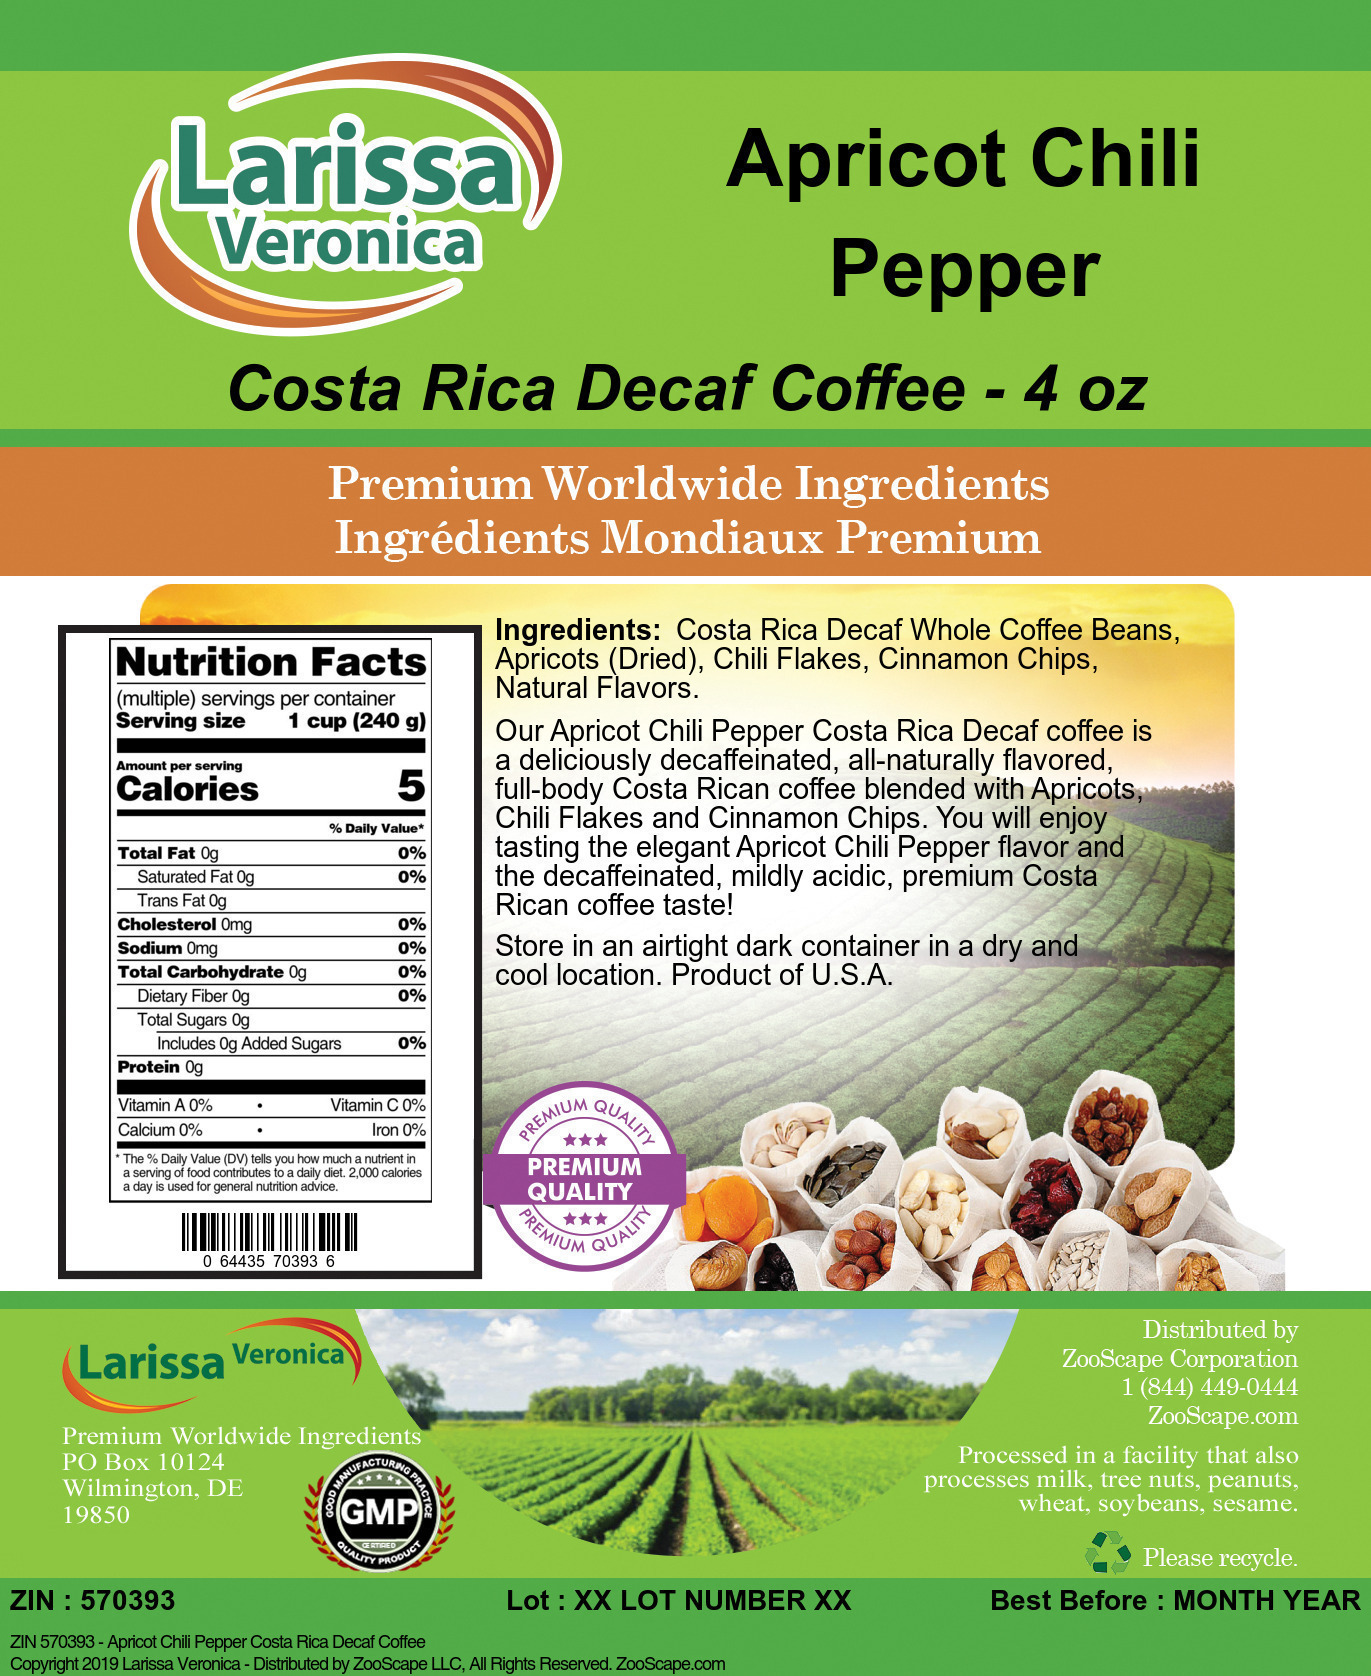 Apricot Chili Pepper Costa Rica Decaf Coffee - Label